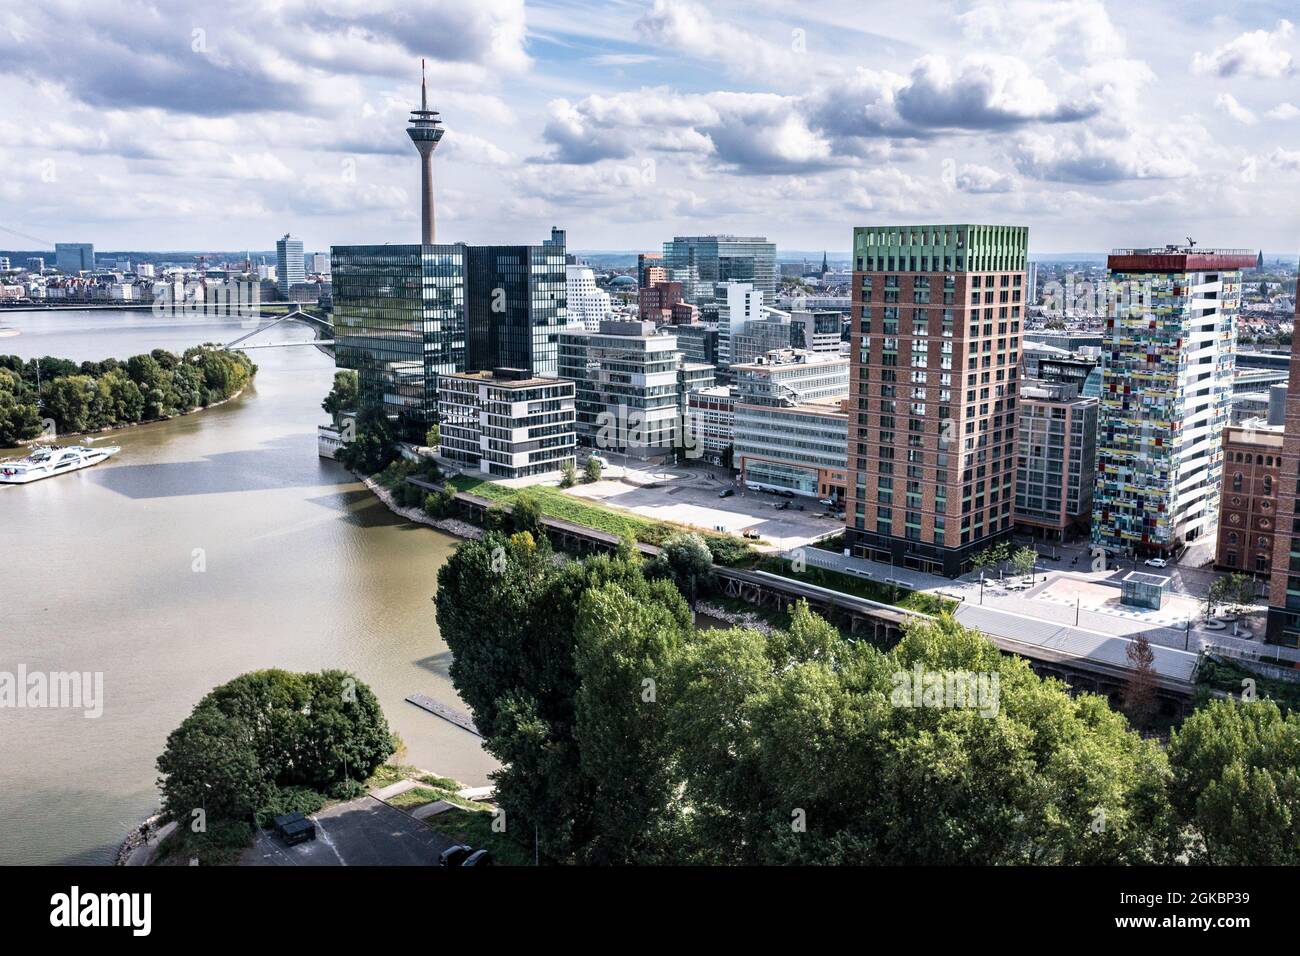 Medienhafen in Düsseldorf mit dem Rhein. Foto Stock